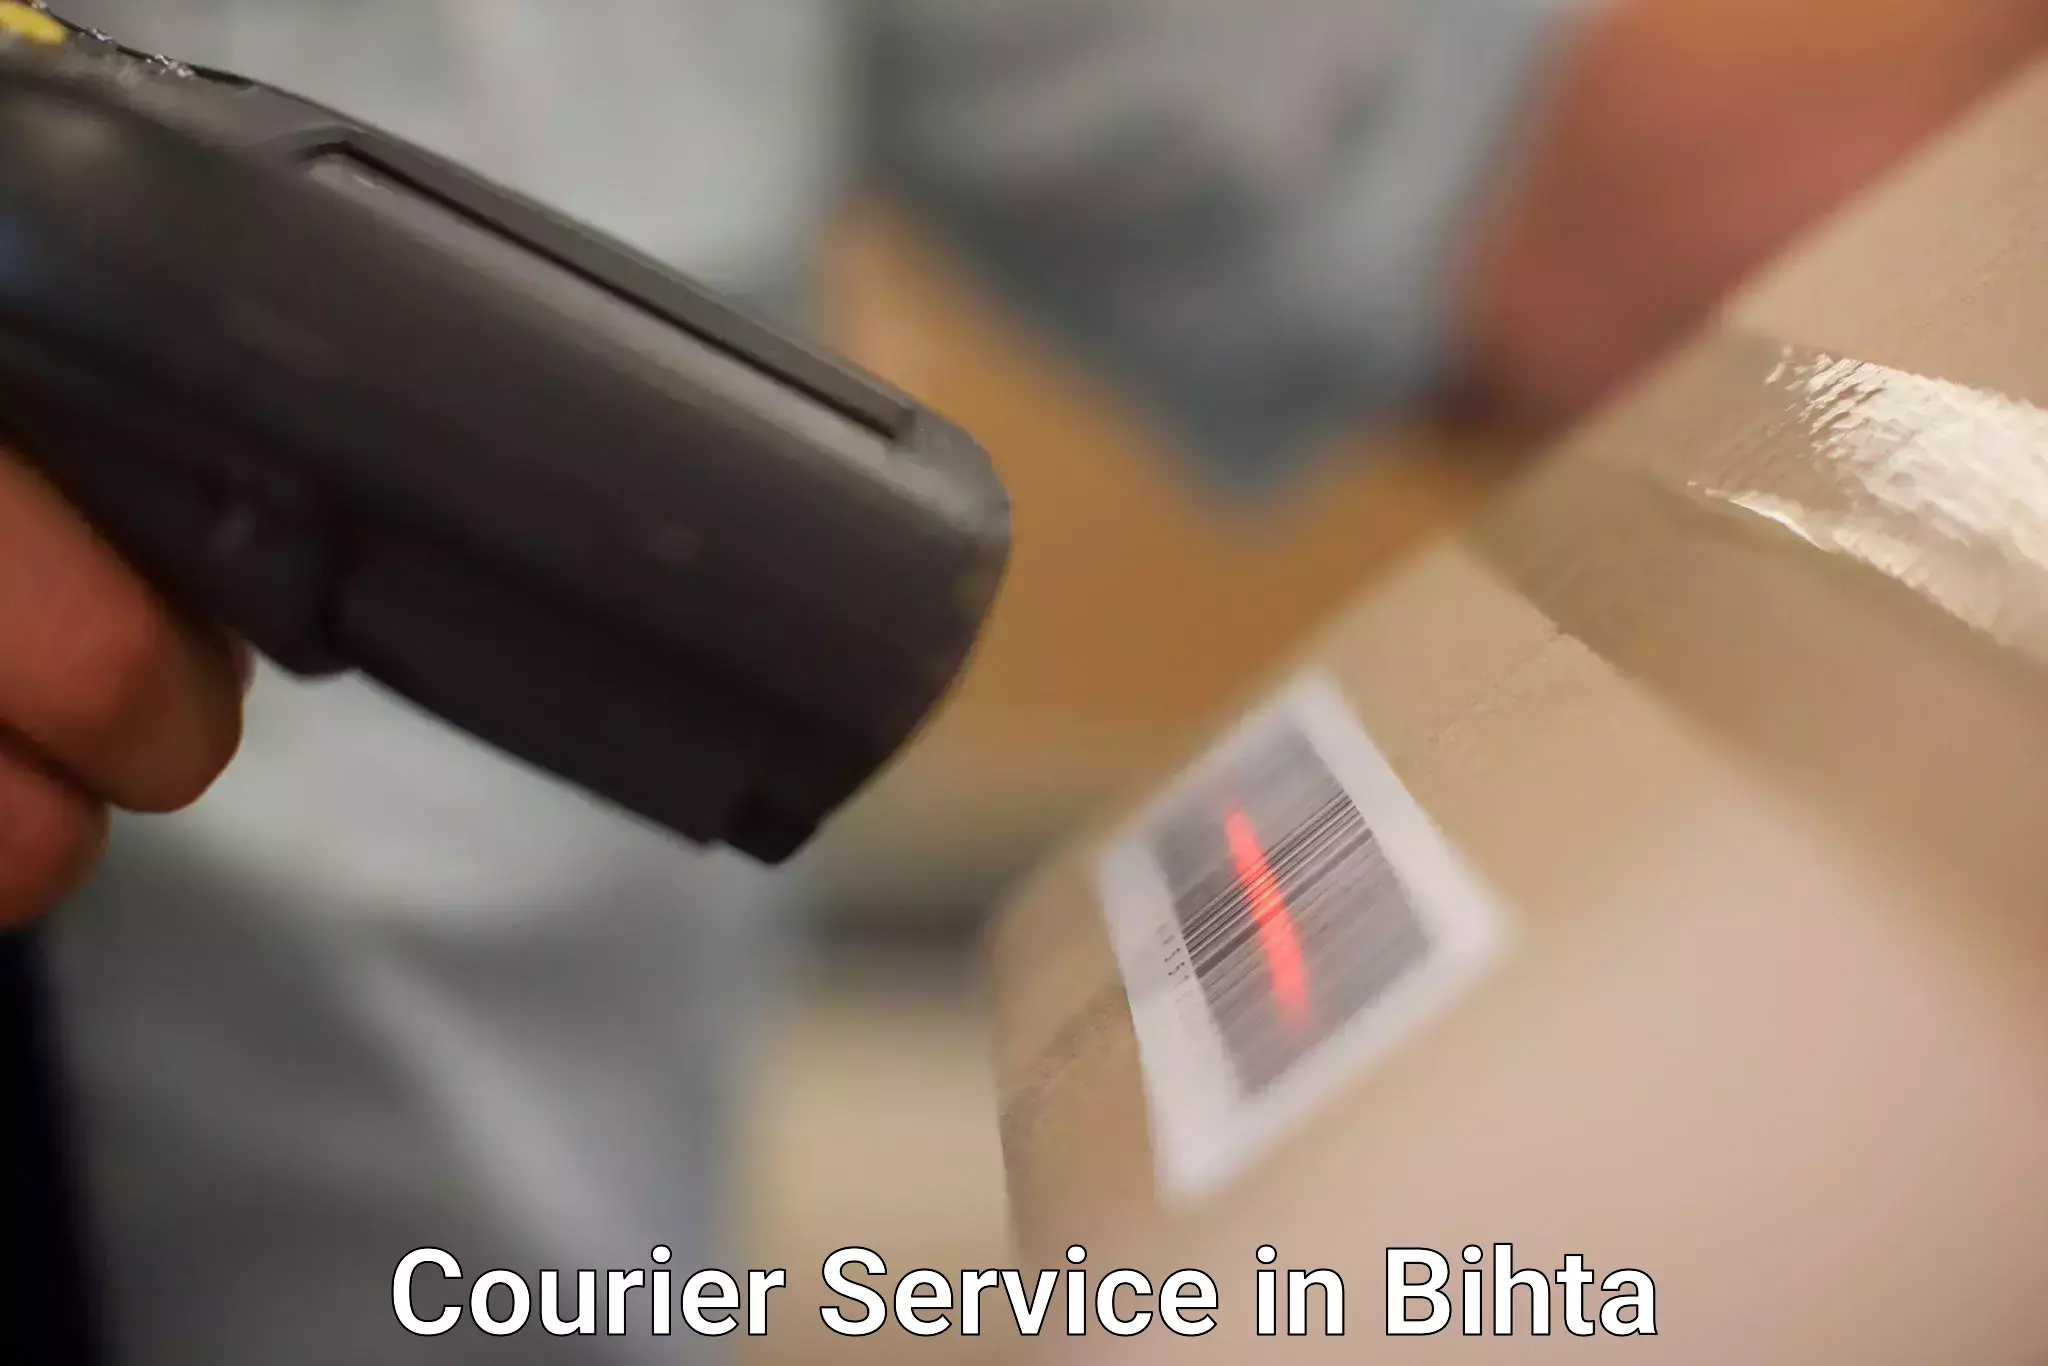 Lightweight parcel options in Bihta